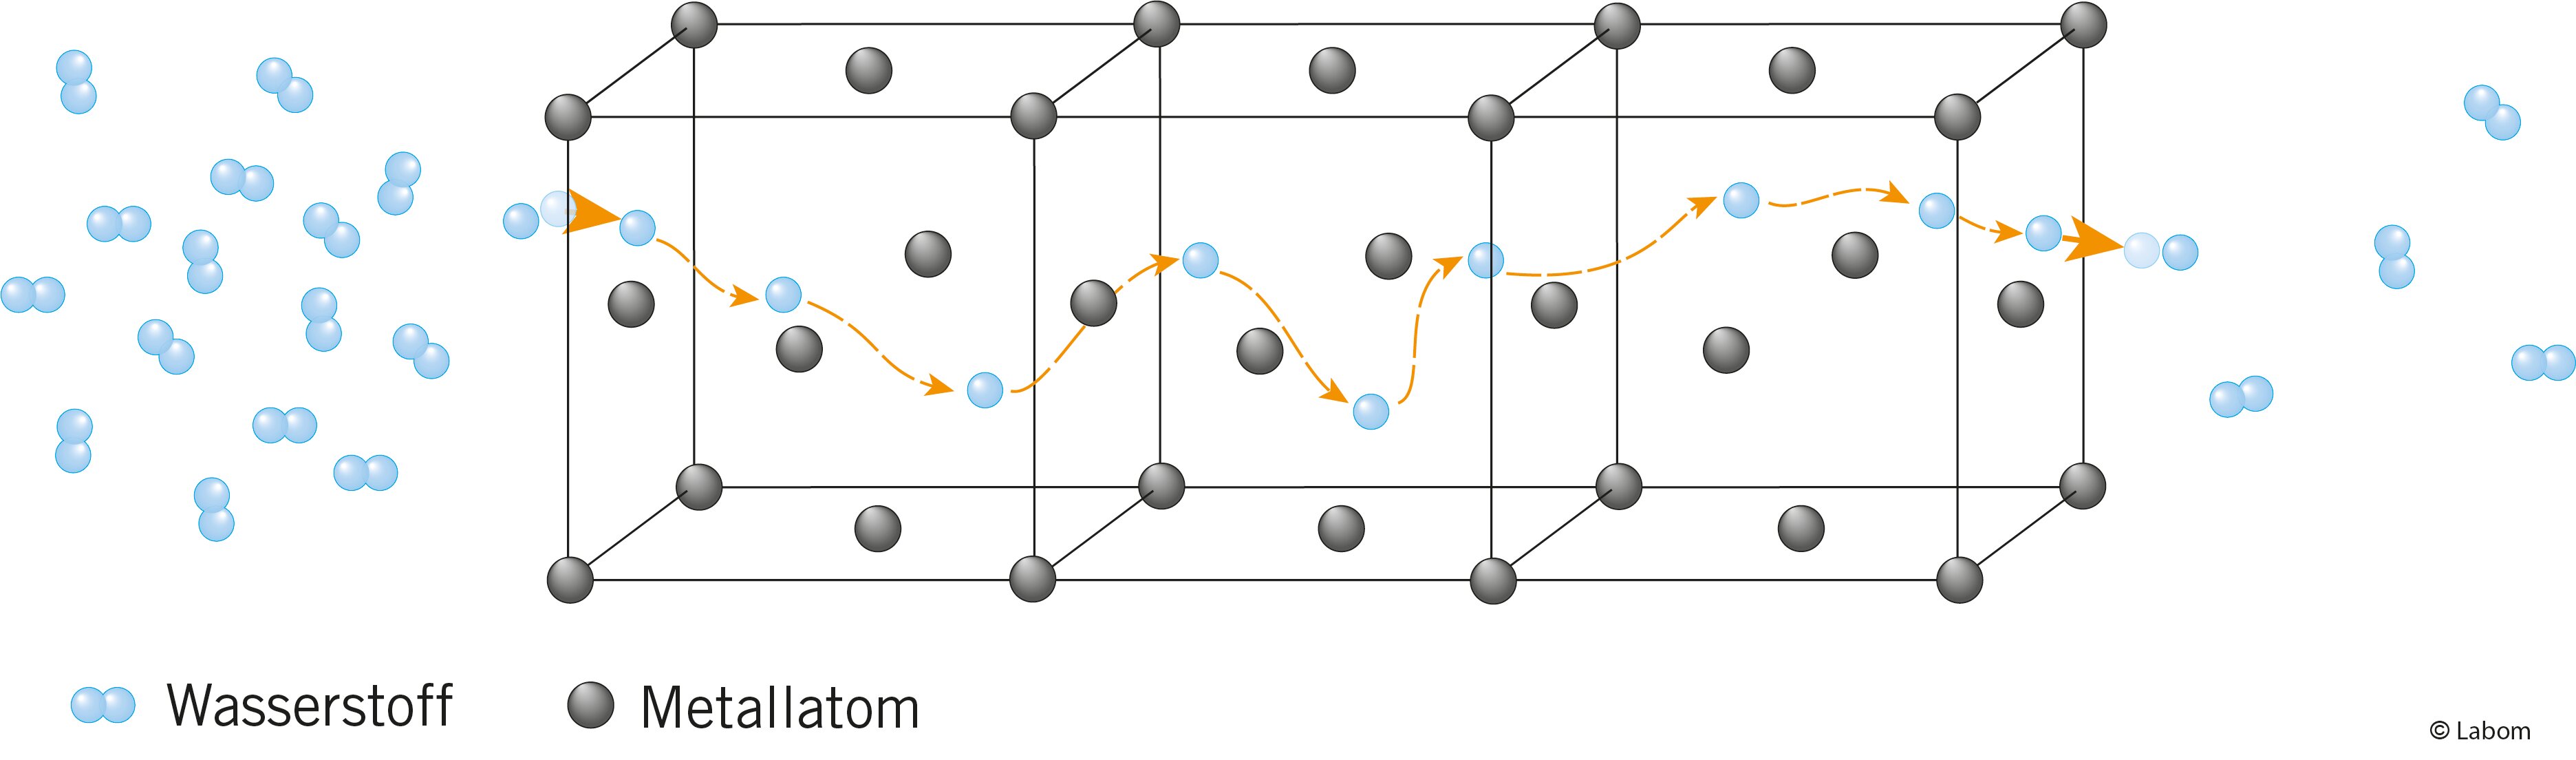 Modell einer Metallgitterstruktur. Es zeigt die Wasserstoffpermeation durch Edelstahl, wobei Wasserstoffmoleküle durch die Metallstruktur des Edelstahls diffundieren.